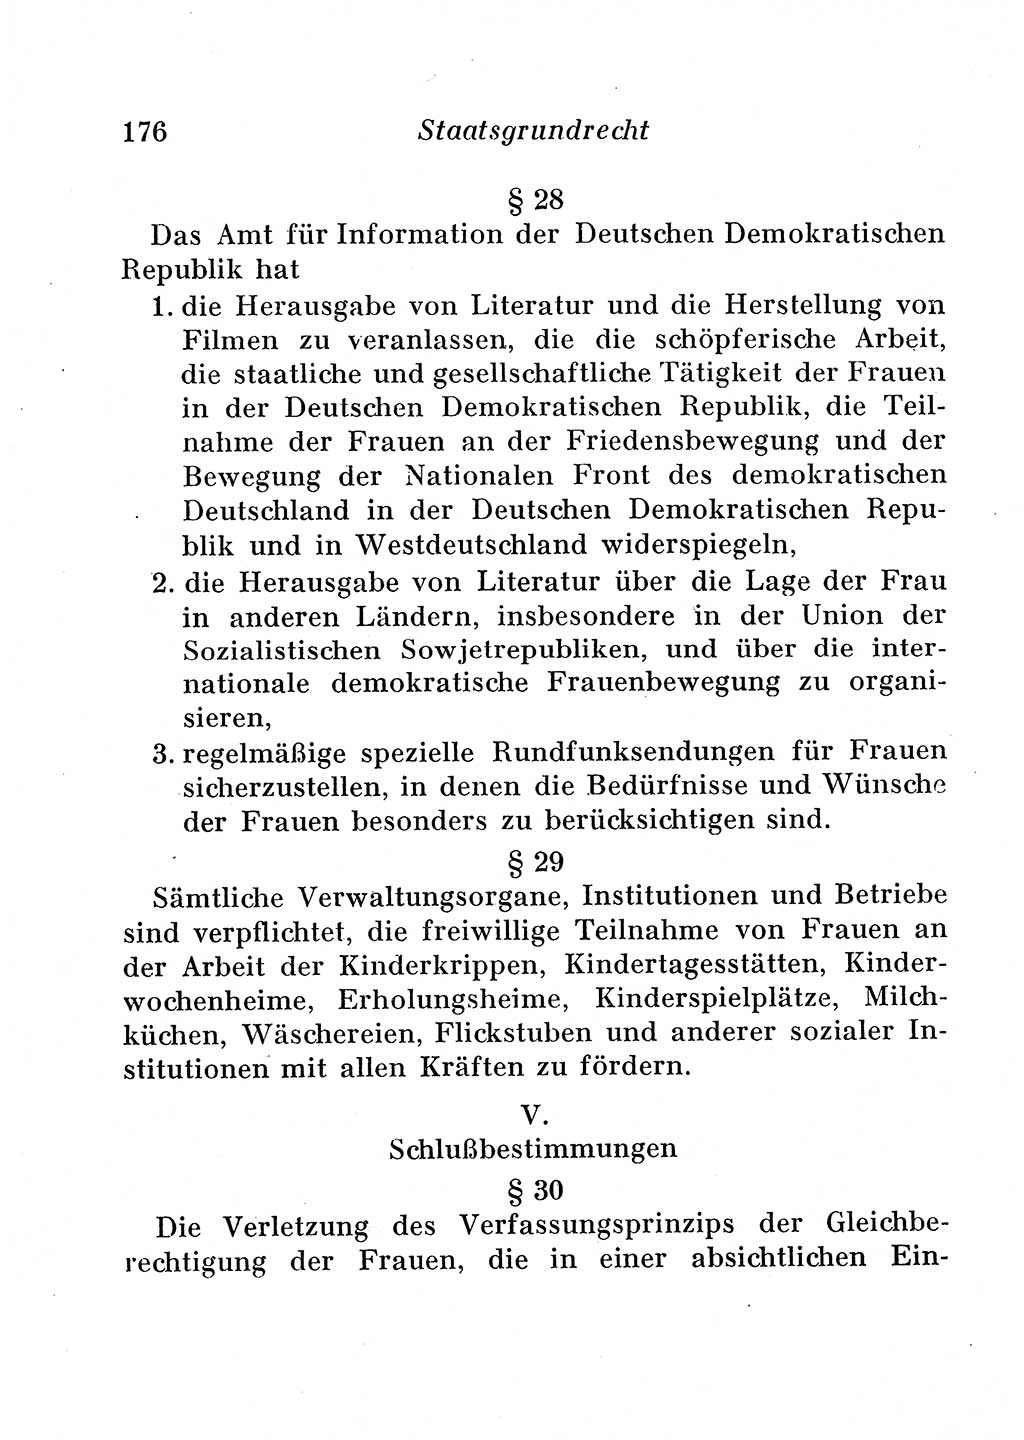 Staats- und verwaltungsrechtliche Gesetze der Deutschen Demokratischen Republik (DDR) 1958, Seite 176 (StVerwR Ges. DDR 1958, S. 176)